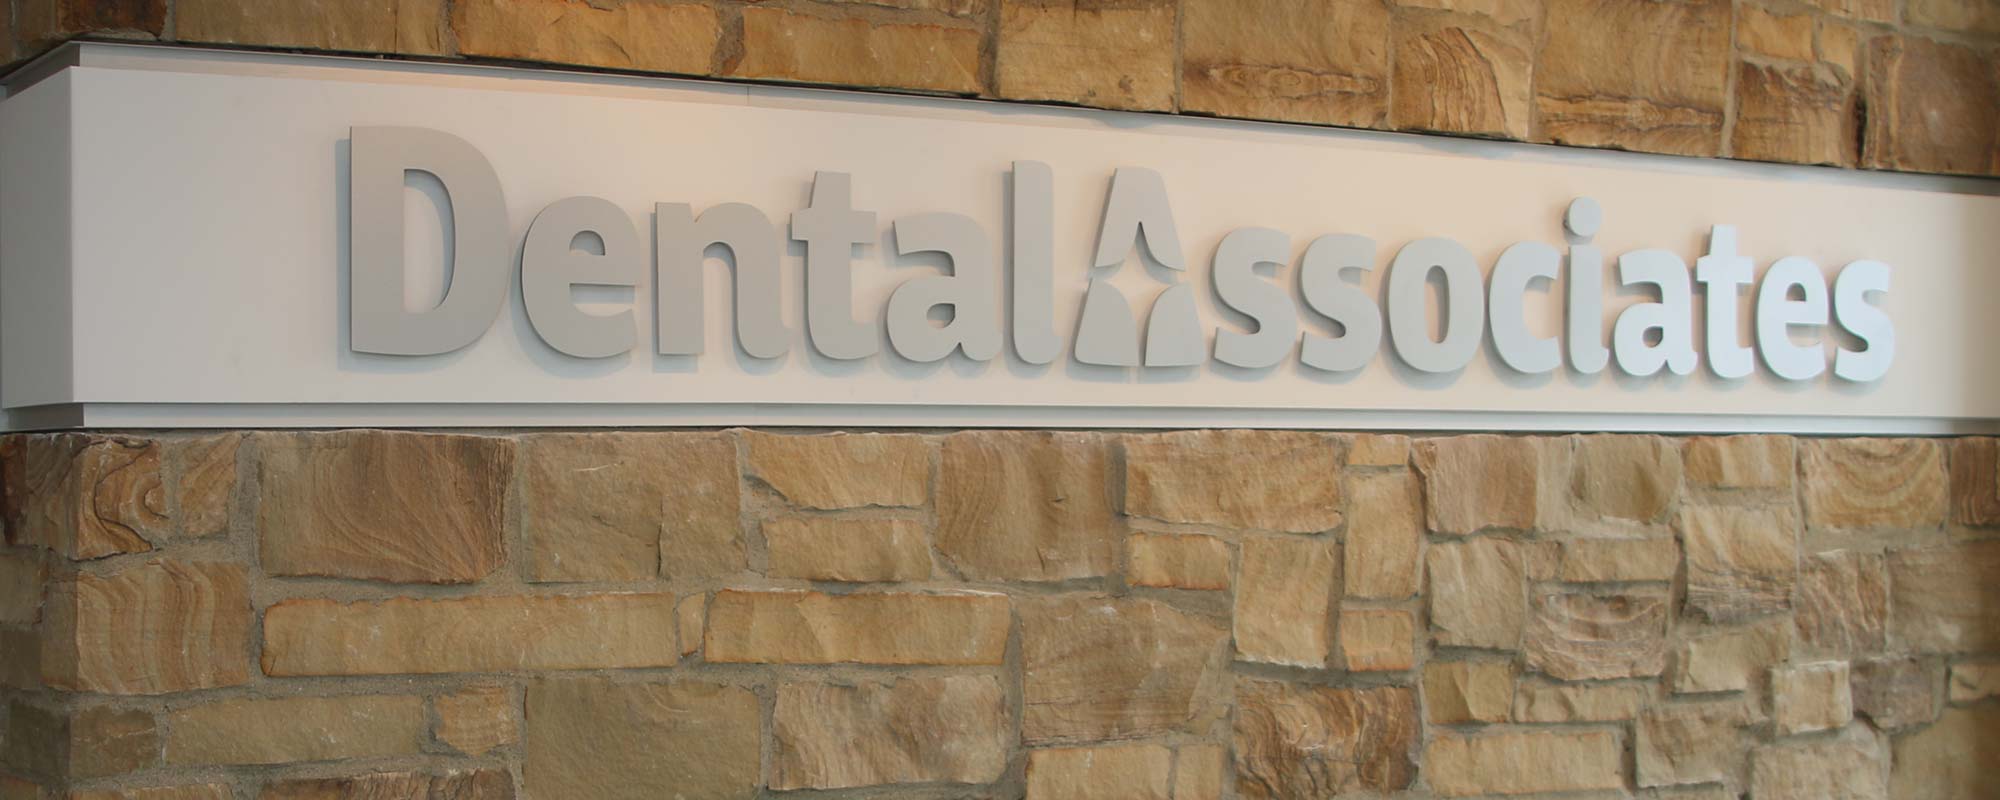 Tour Dental Associates Alsip brand new dental center on 111st Street.